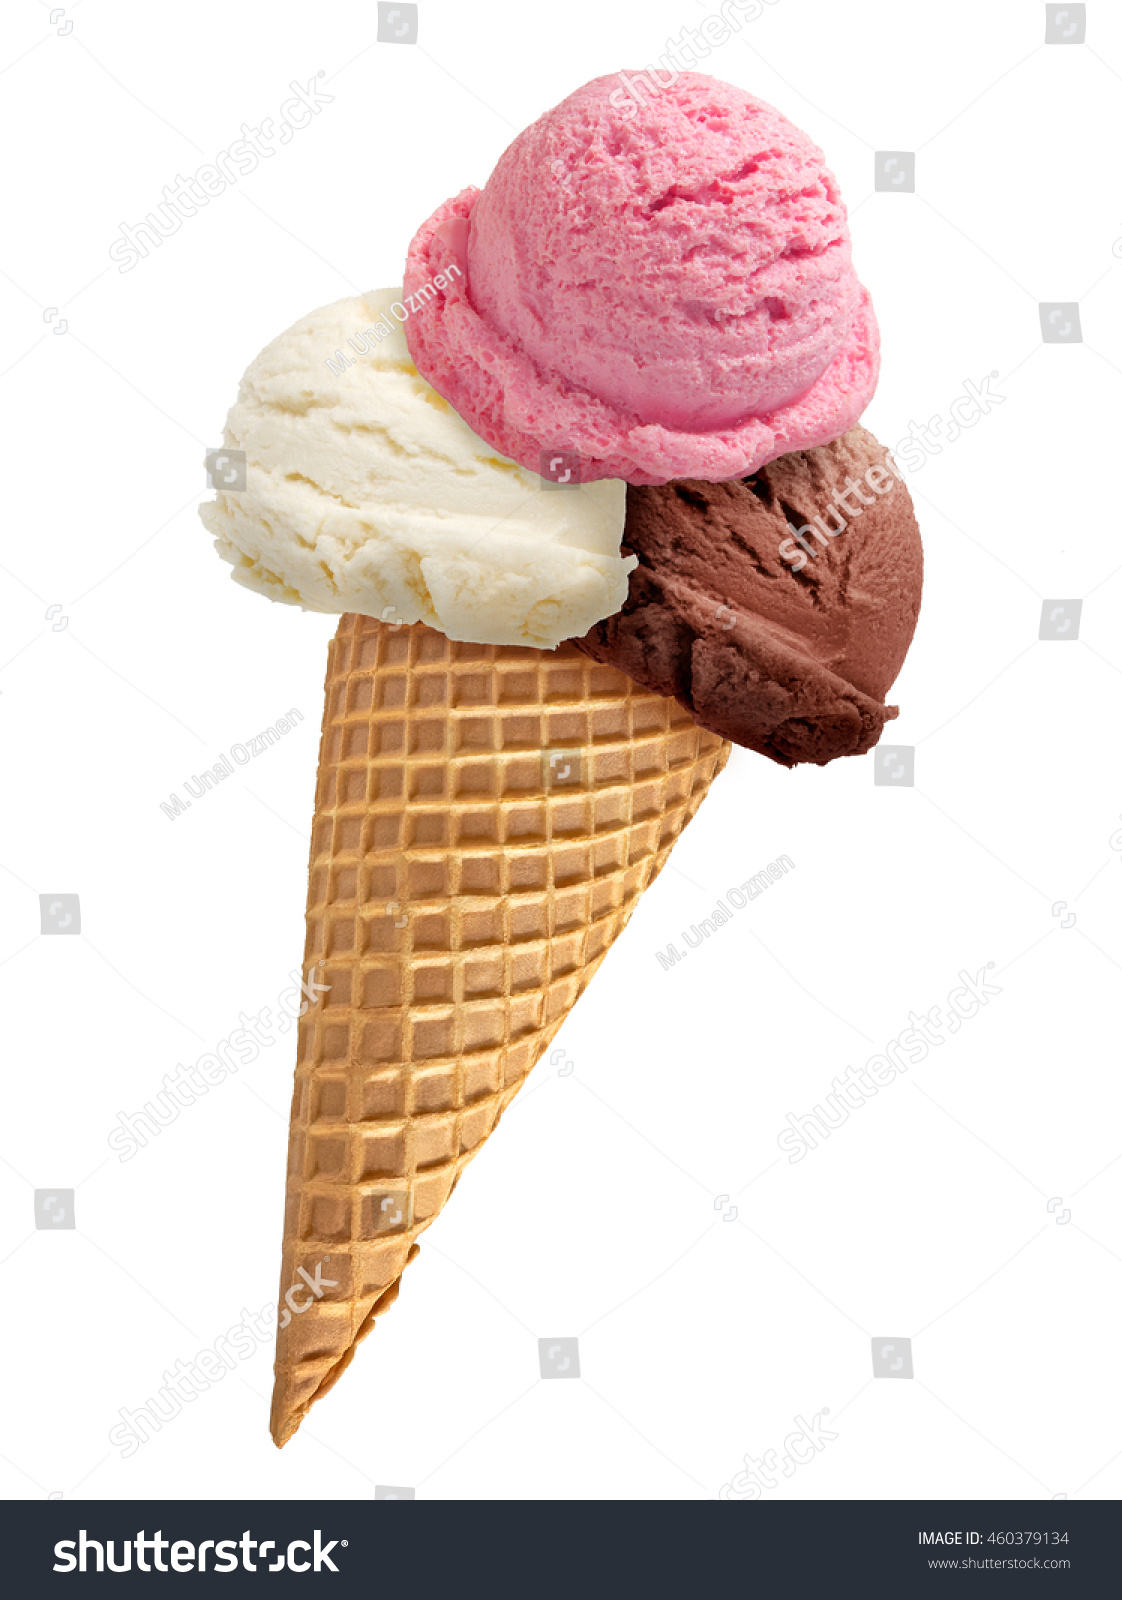 Chocolate ice cream / strawberry ice cream / vanilla ice cream scoop with cone isolated on white background. #460379134